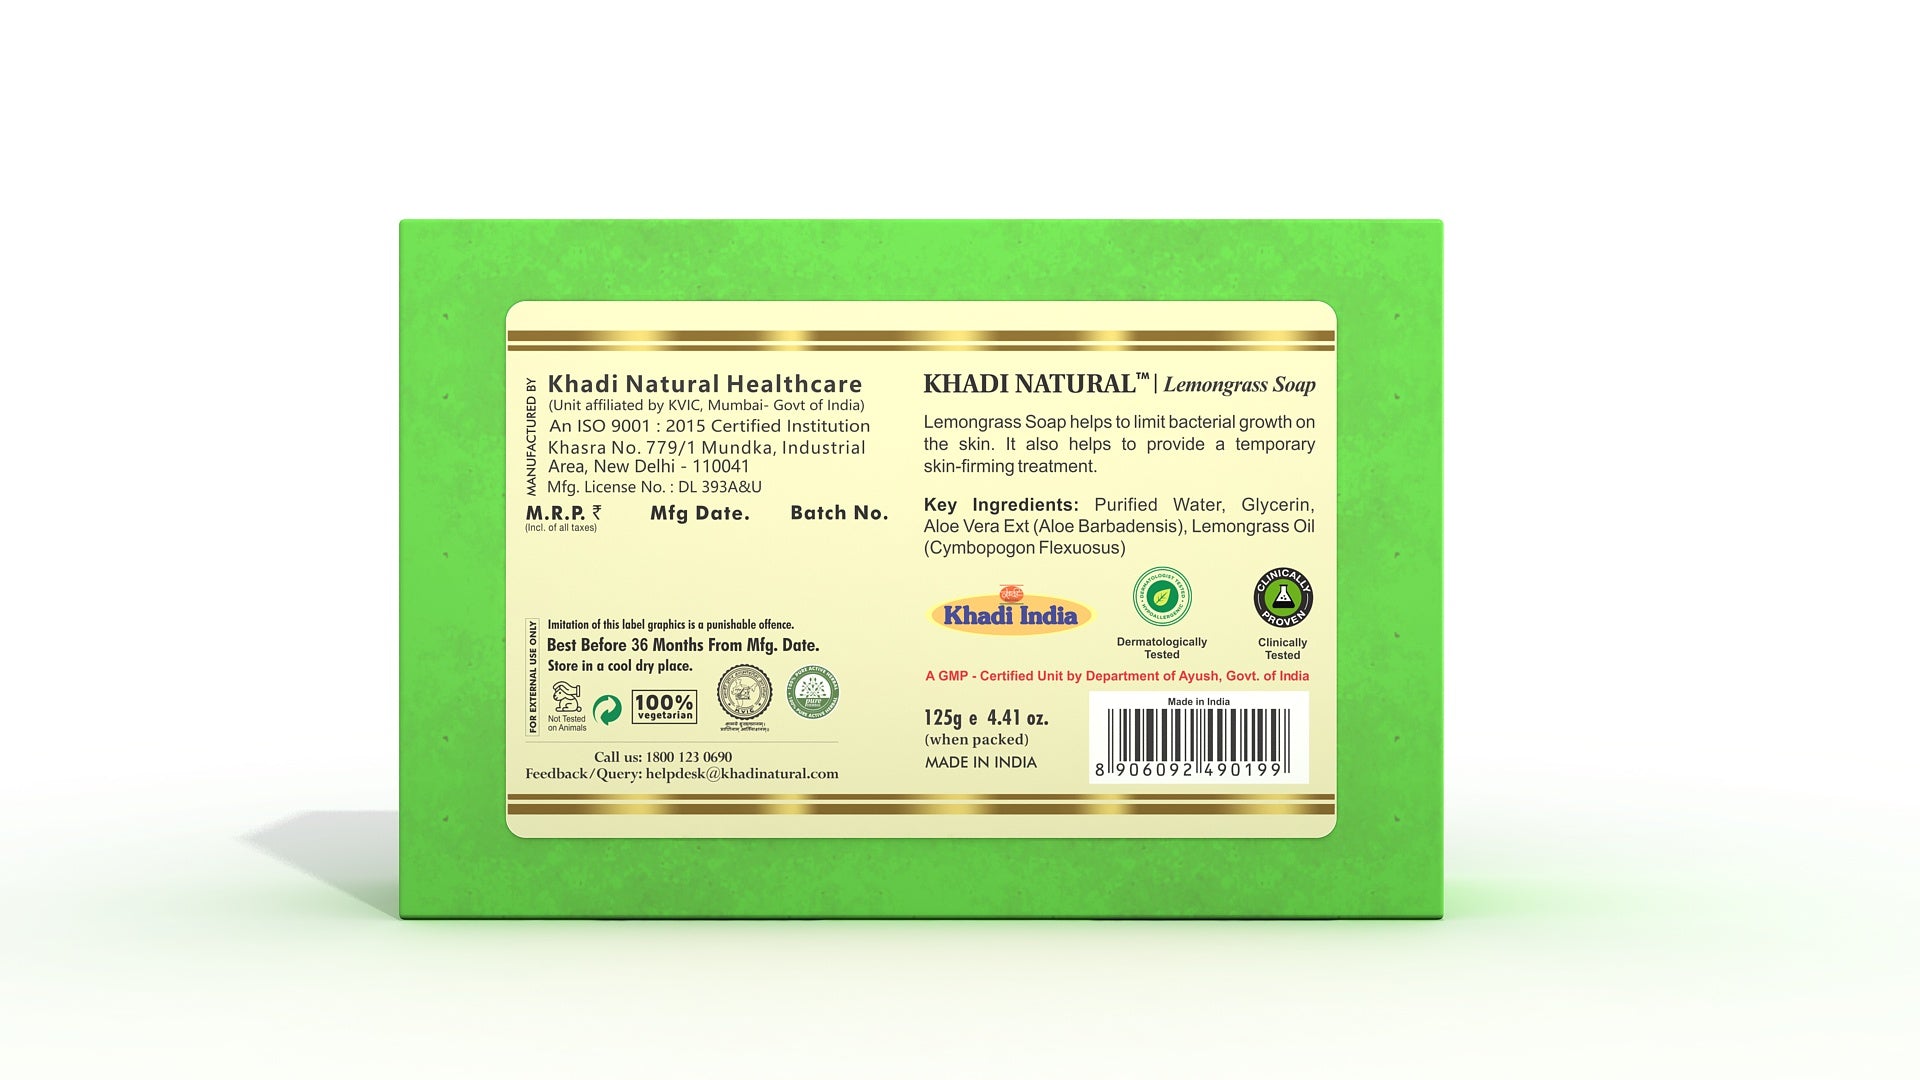 Khadi Natural Herbal Lemongrass Soap